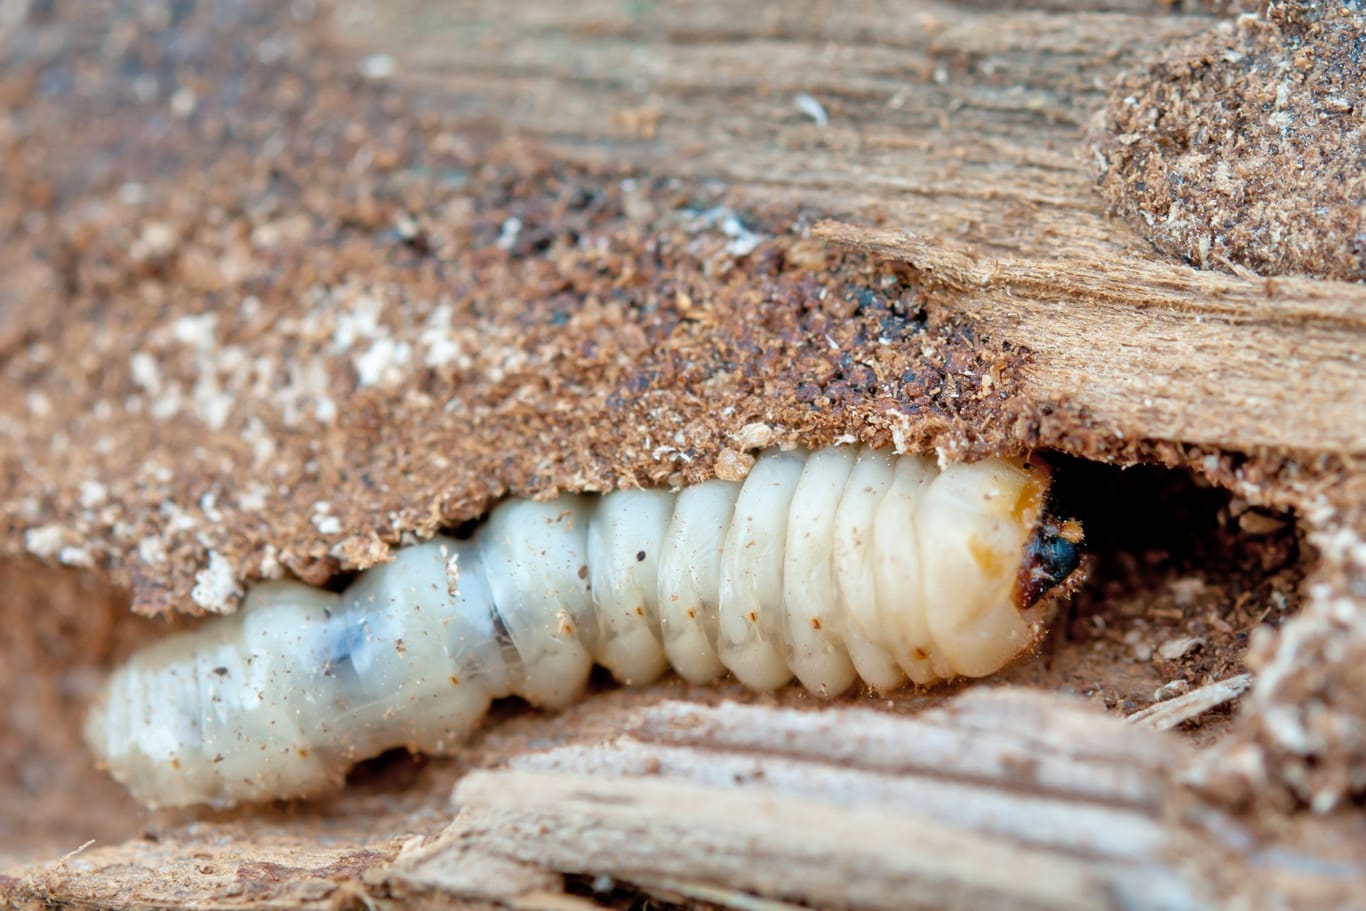 Holzwürmer können erheblichen Schaden anrichten, der schwer wieder auszubessern ist.